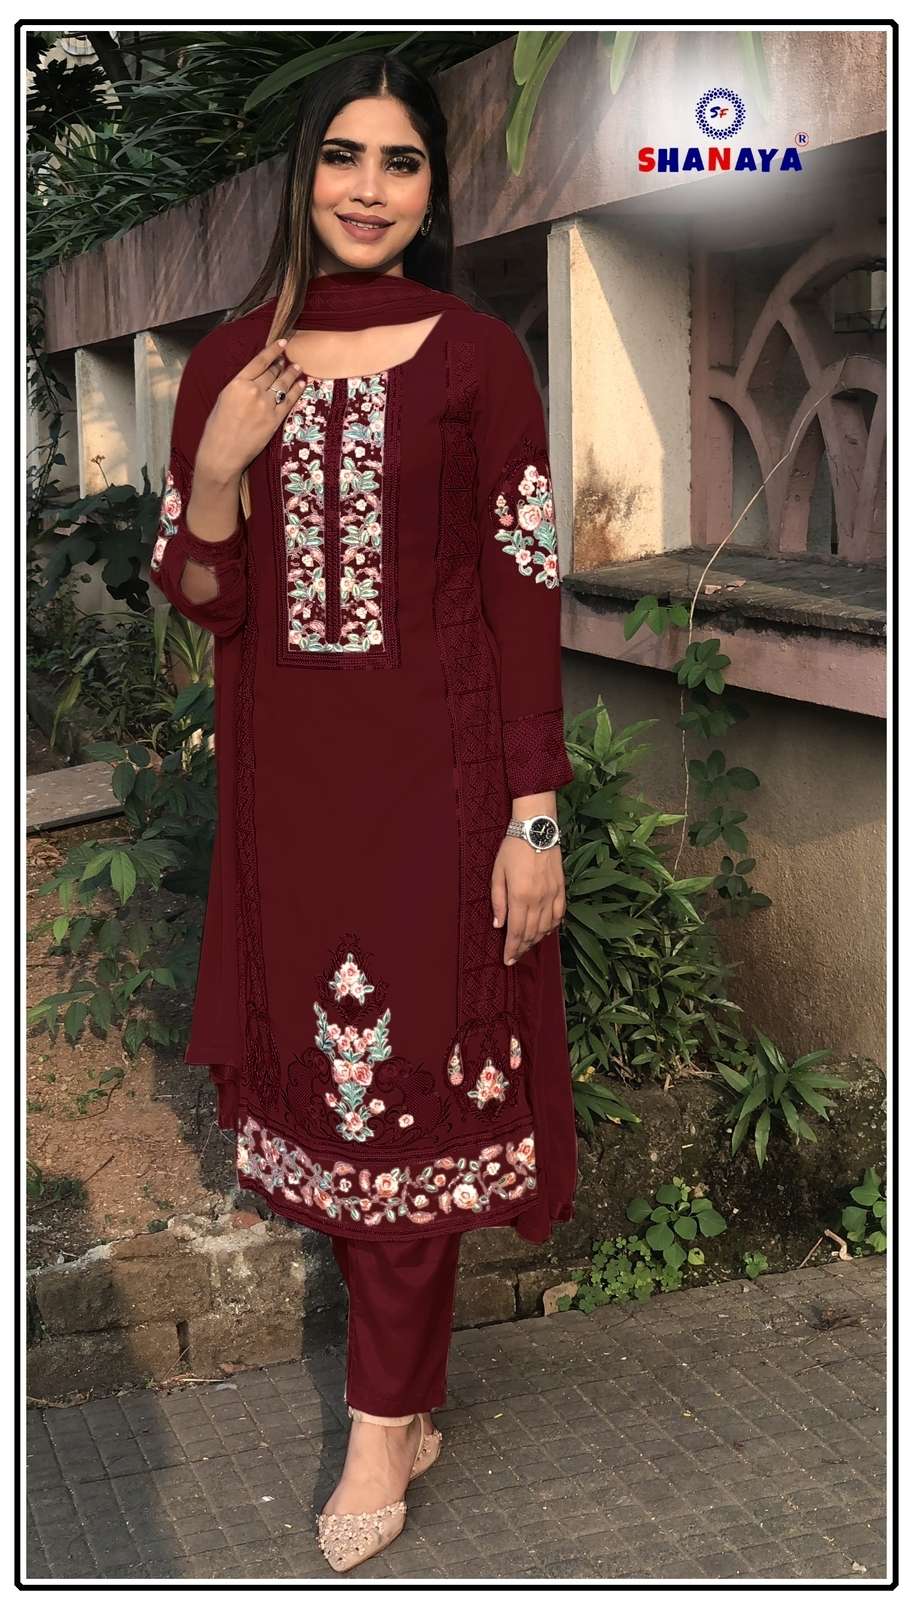 shanaya fashion rose s4 series fancy designer pakistani salwar kameez wholesale price surat 2023 01 25 19 12 41